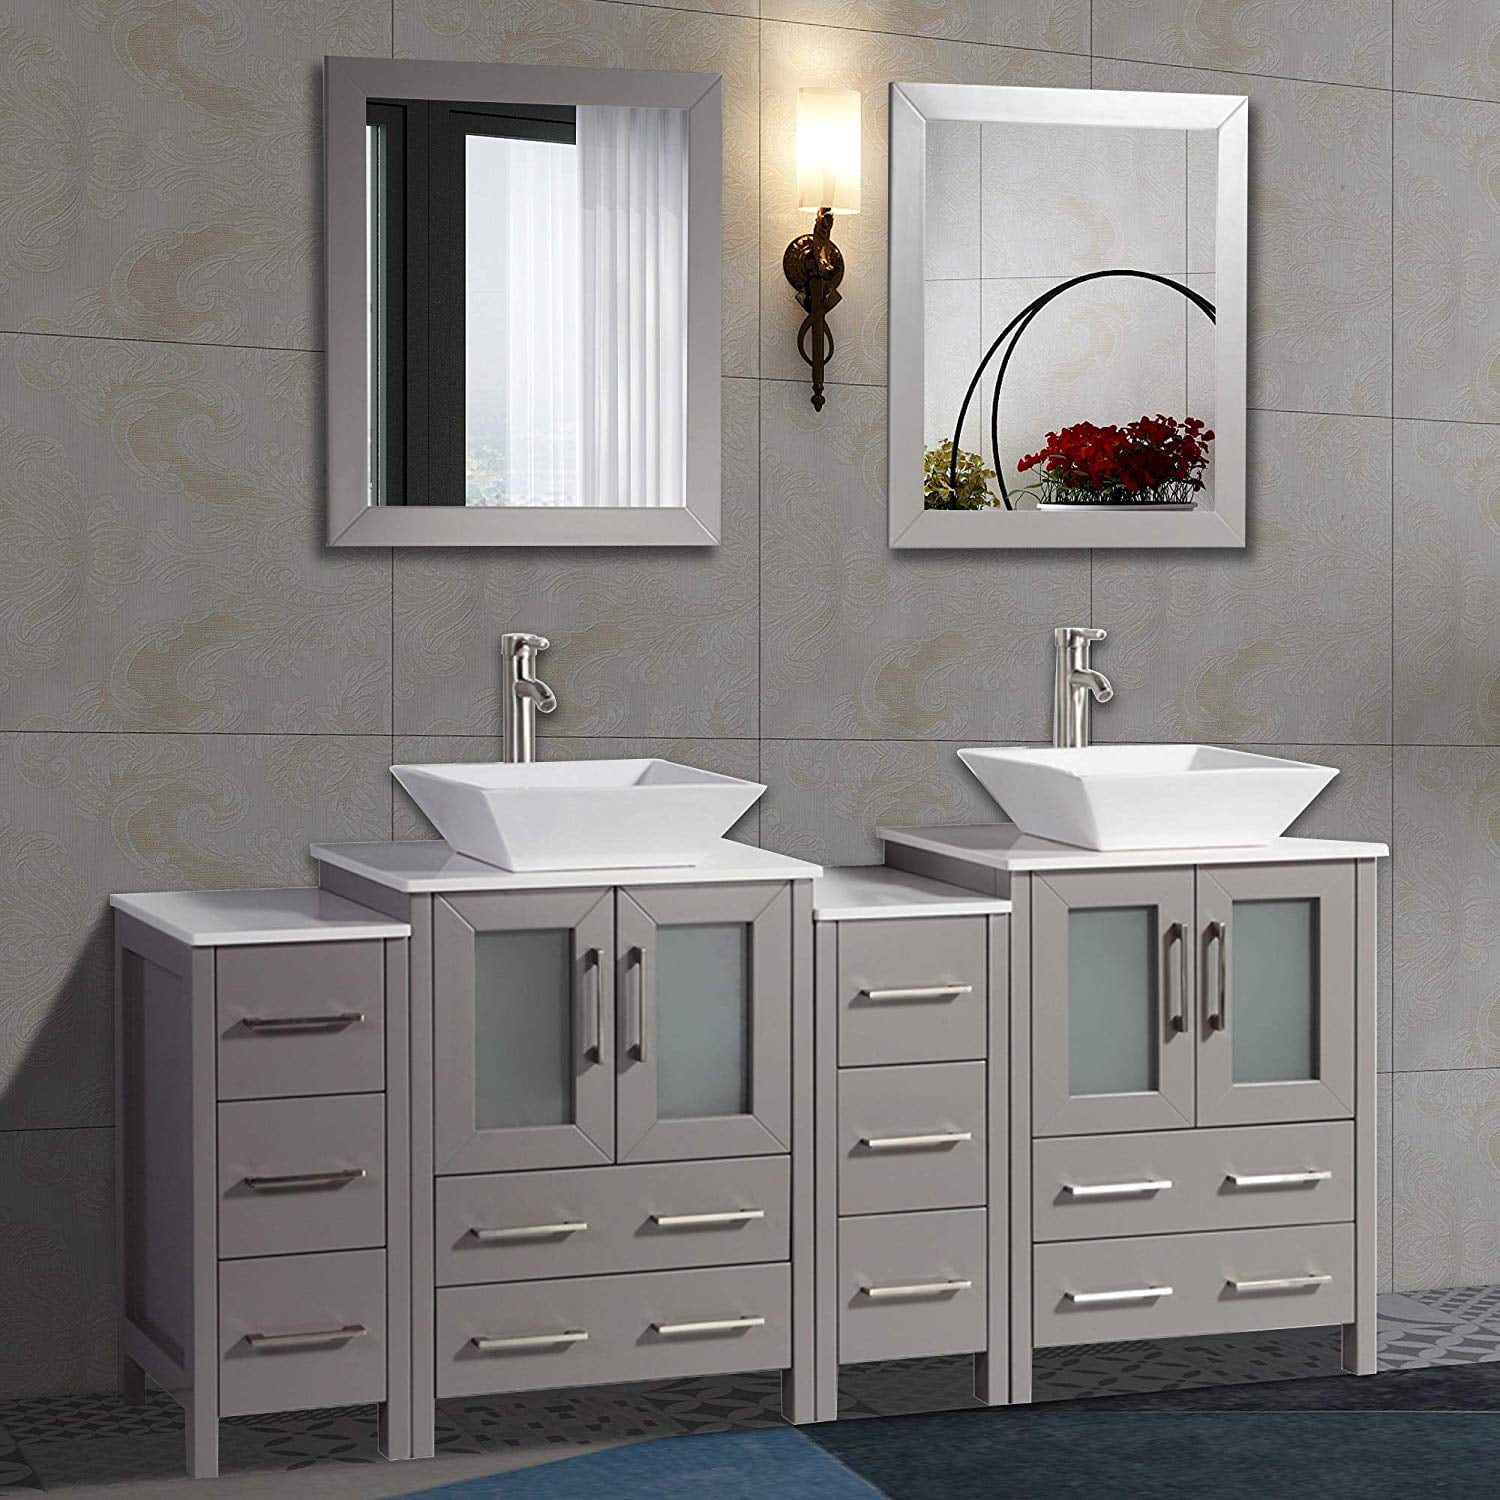 Top Double Sink Bathroom Vanity - Best Design Idea